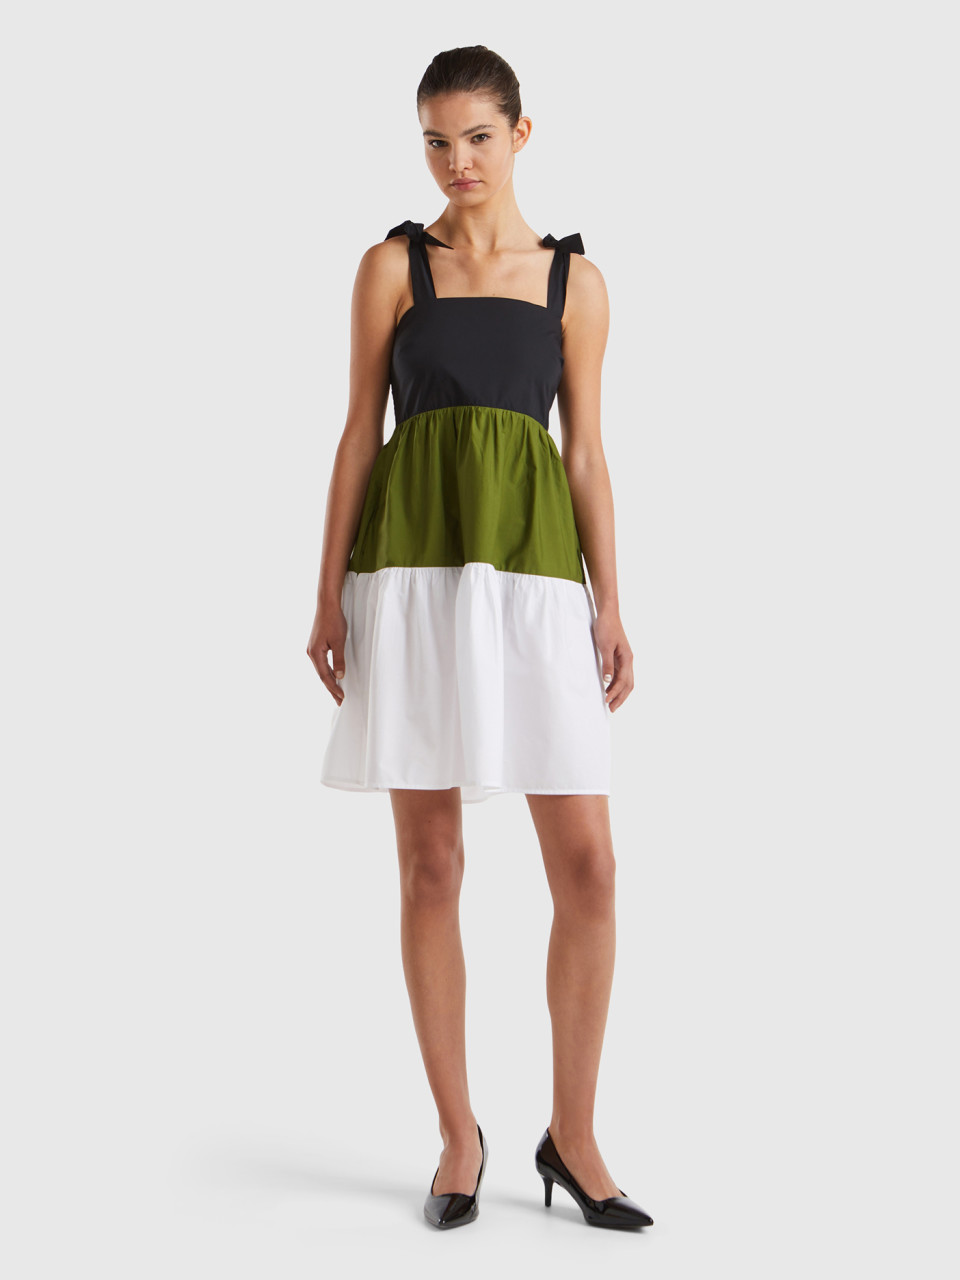 Benetton, Shirt Color Block Dress, Multi-color, Women